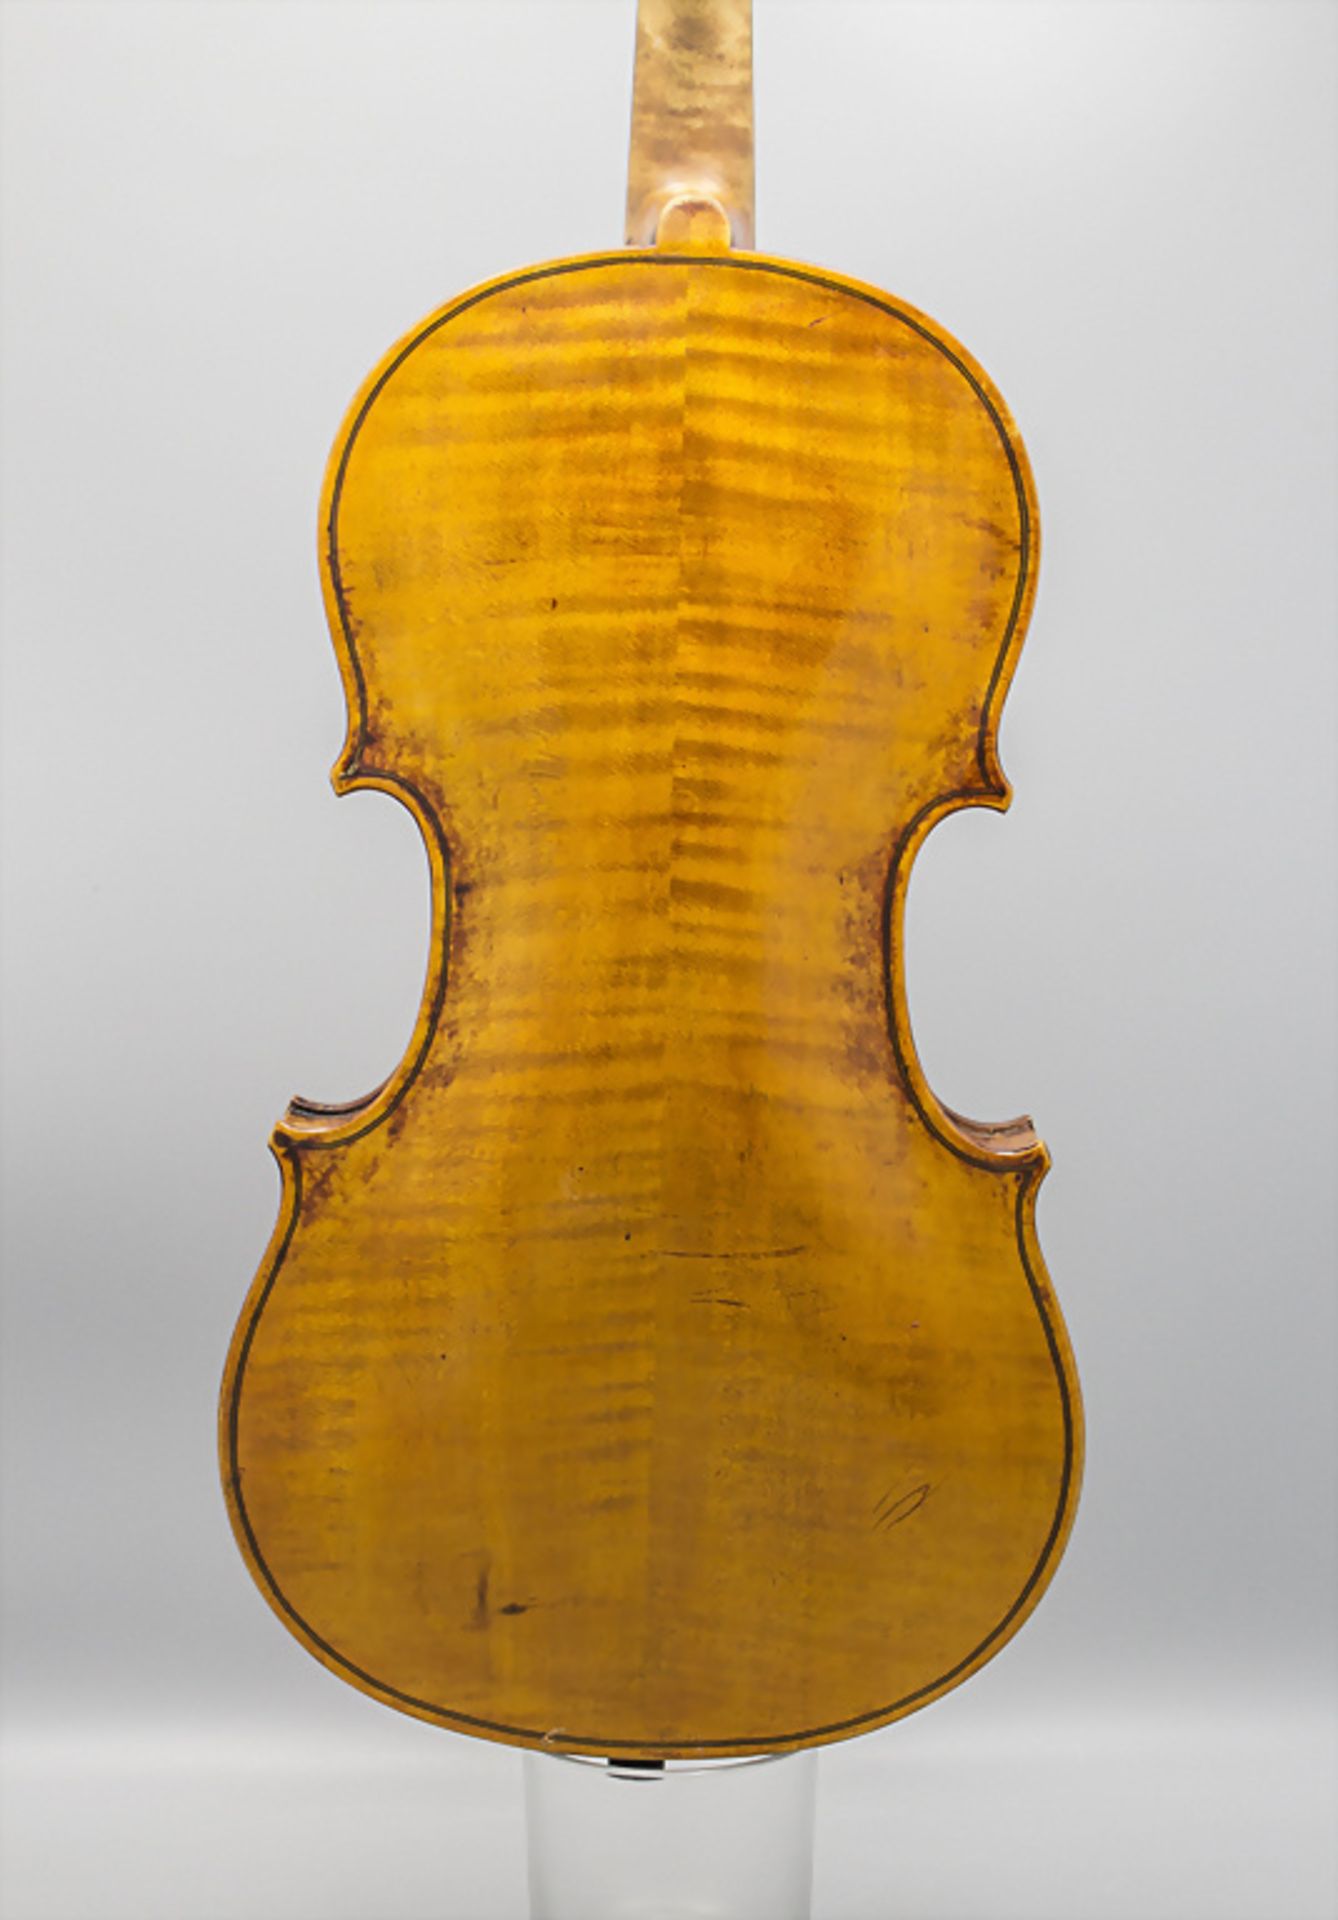 Violine / A violin, August Wunderlich, Markneukirchen, um 1900 - Image 2 of 9